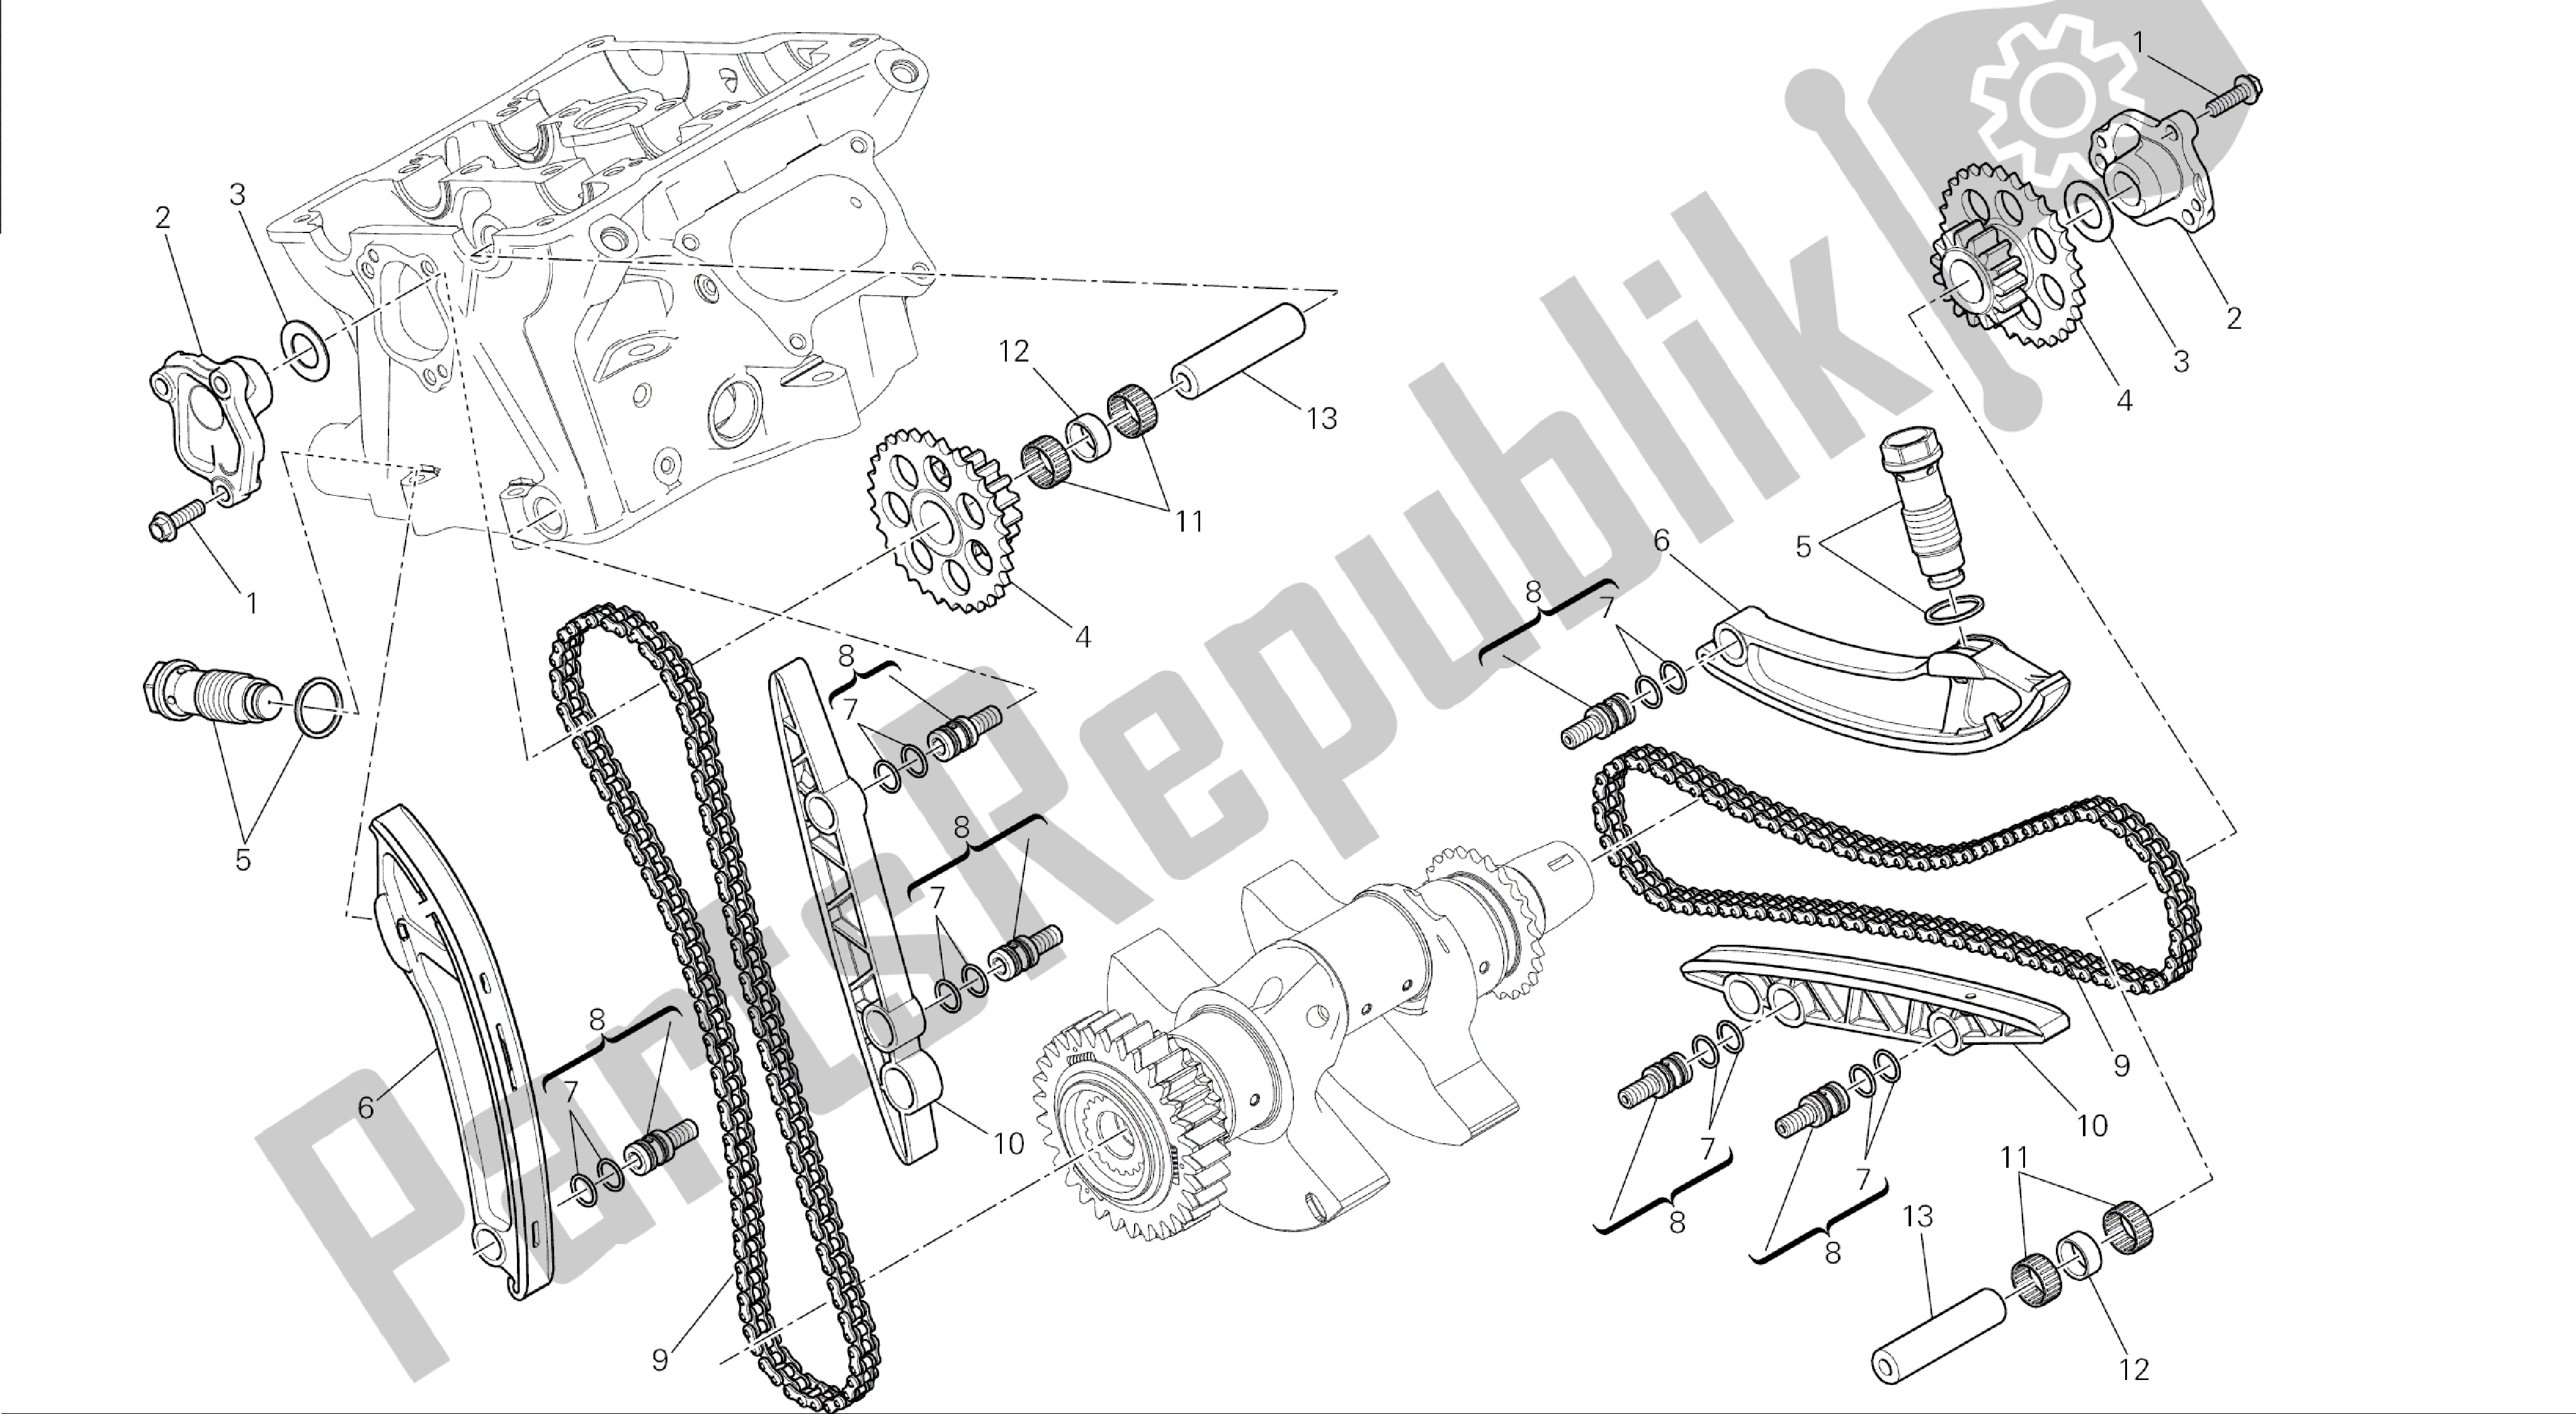 Todas las partes para Dibujo 008 - Motor De Grupo Distribuzione [mod: 1199 Abs; Xst: Aus, Bra, Chn, Eur, Fra, Jap] de Ducati Panigale ABS 1199 2014